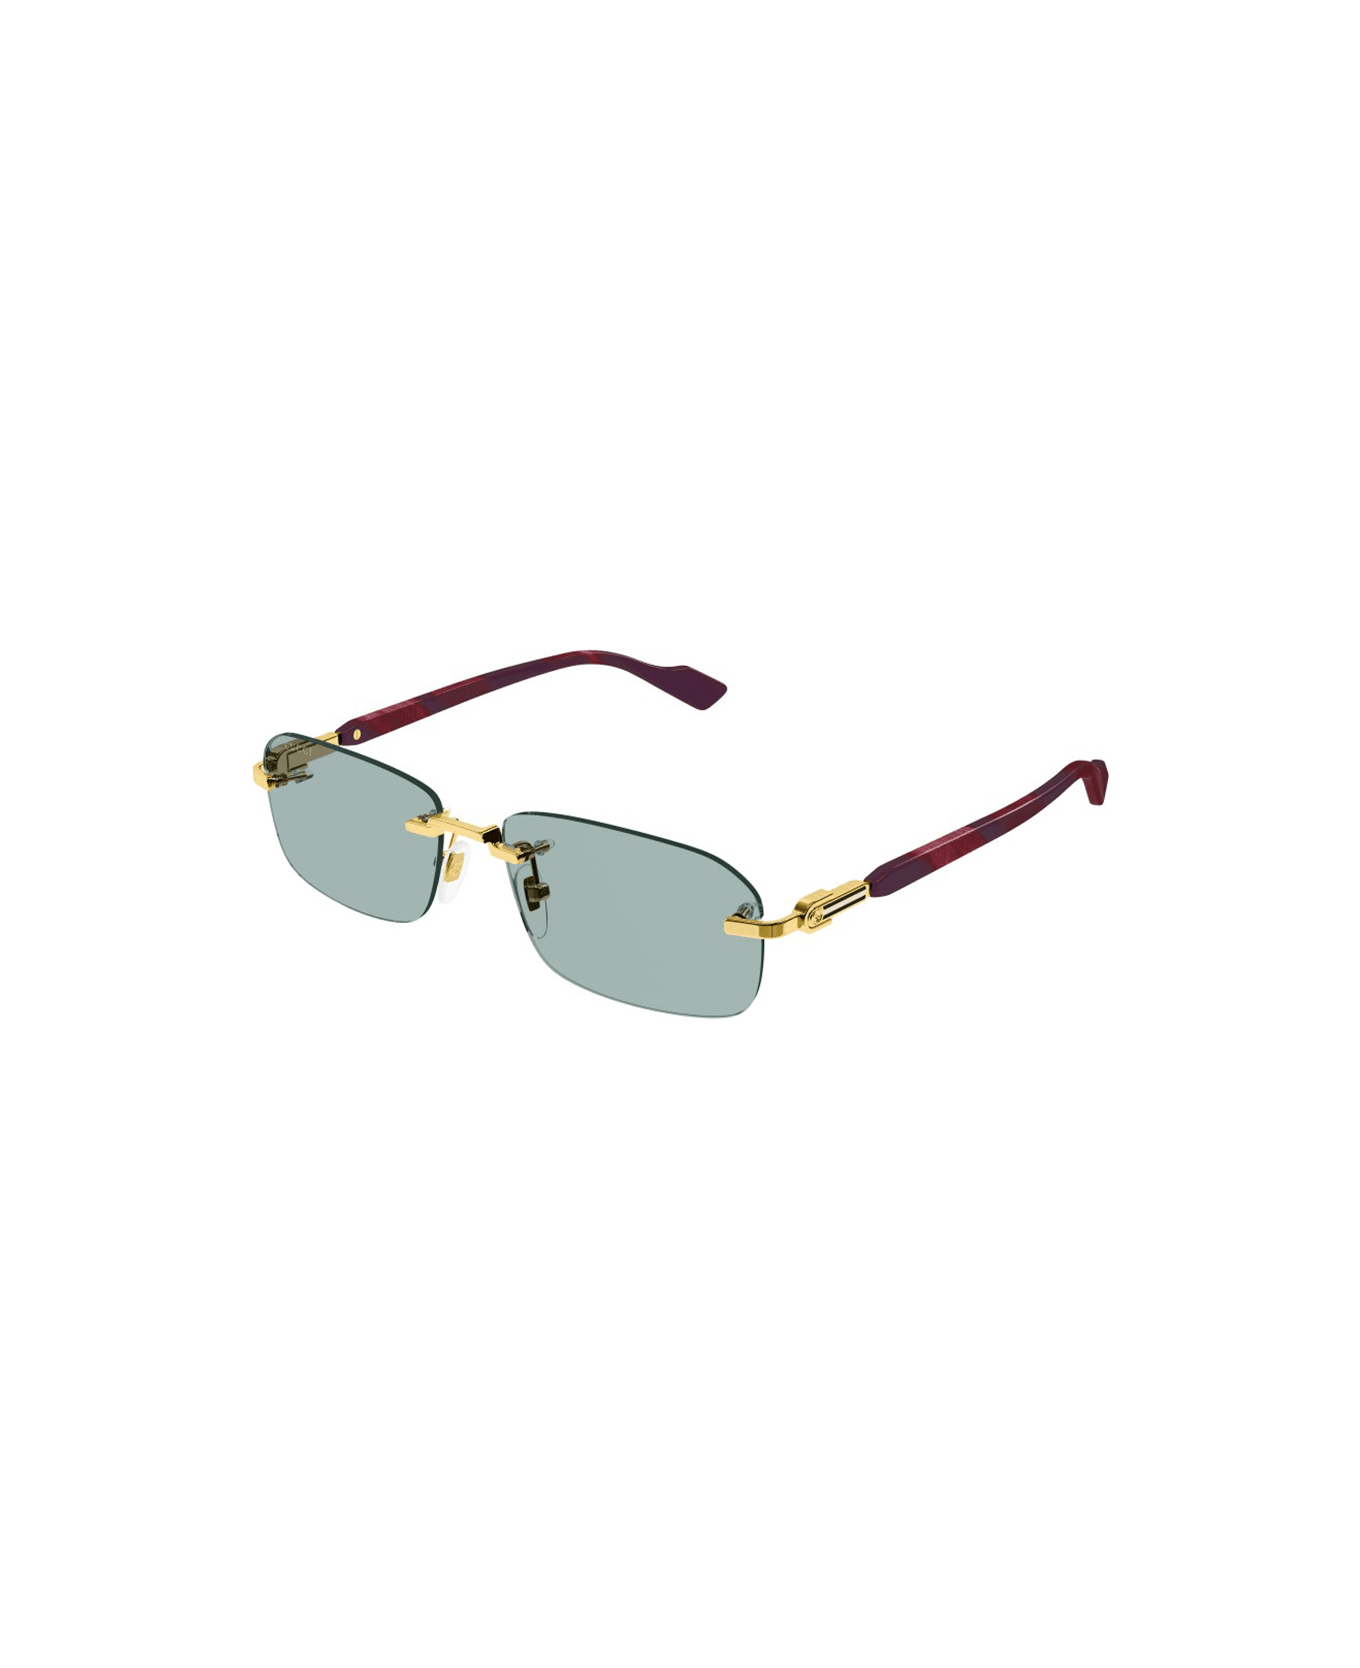 Gucci Eyewear GG1221S Sunglasses - Gold Burgundy Green